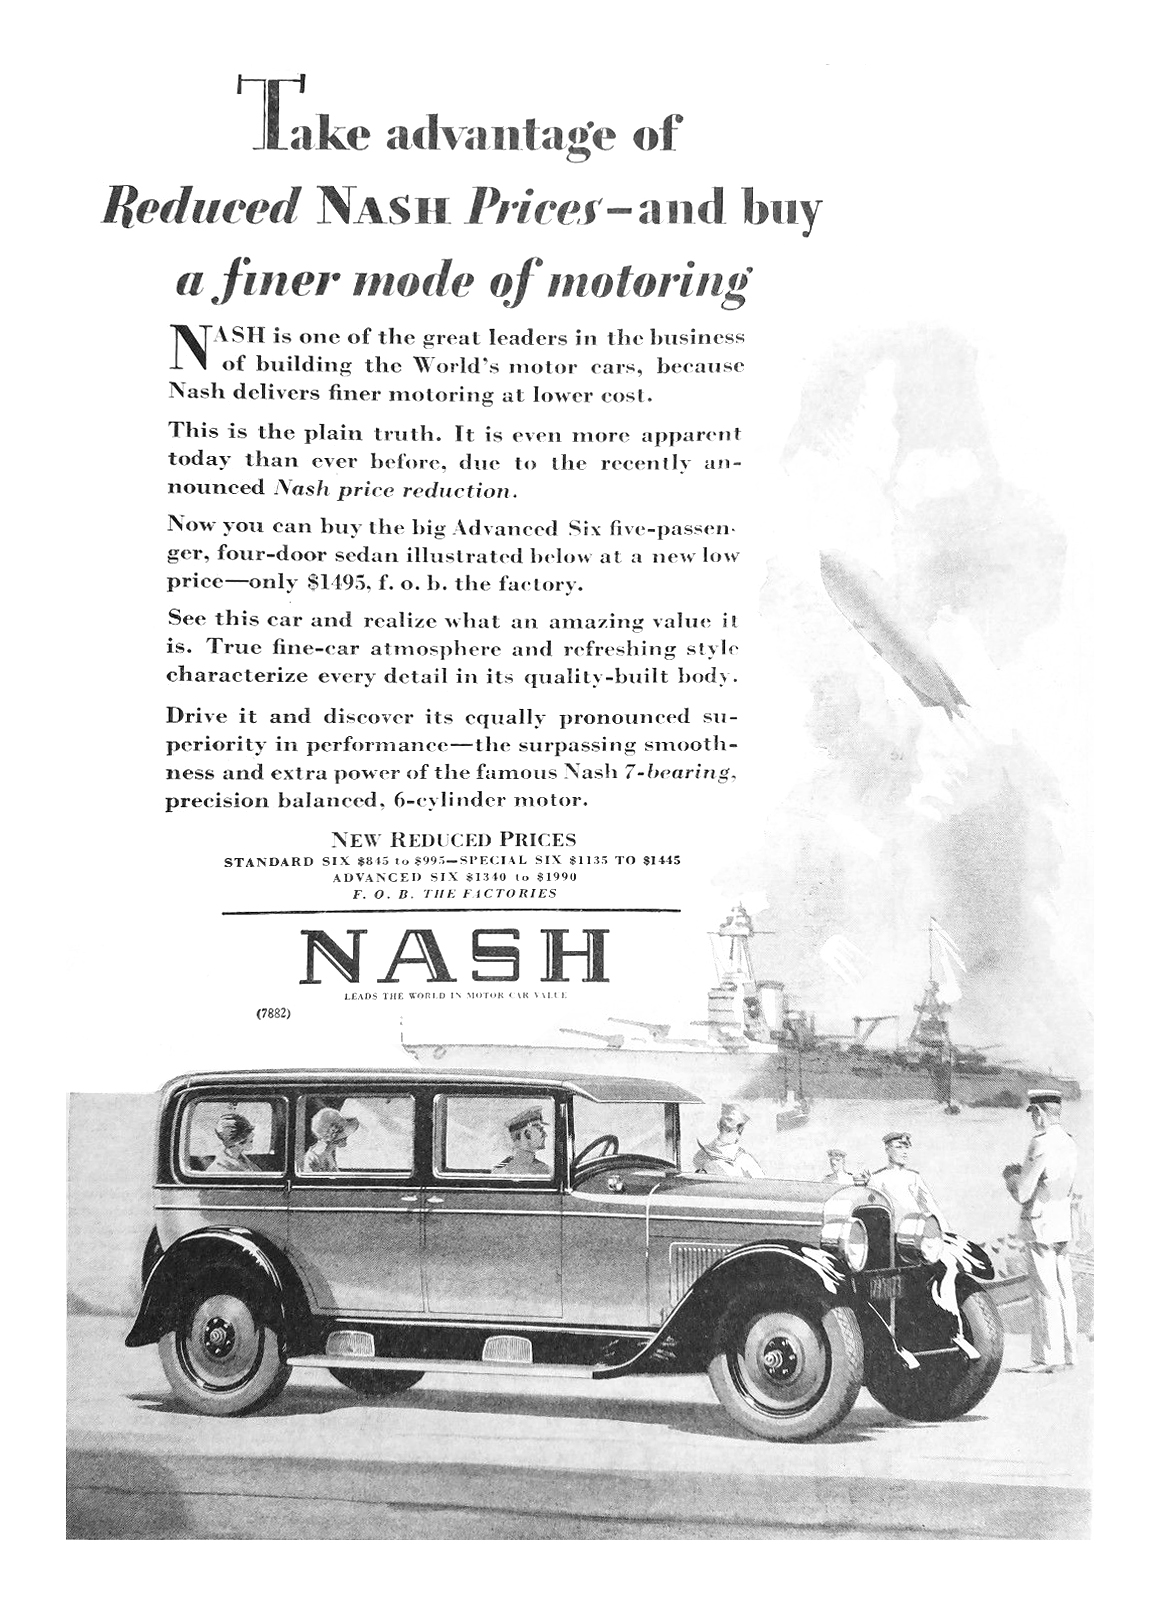 Nash Advanced Six Five-Passenger Four-Door Sedan Ad (April, 1928)